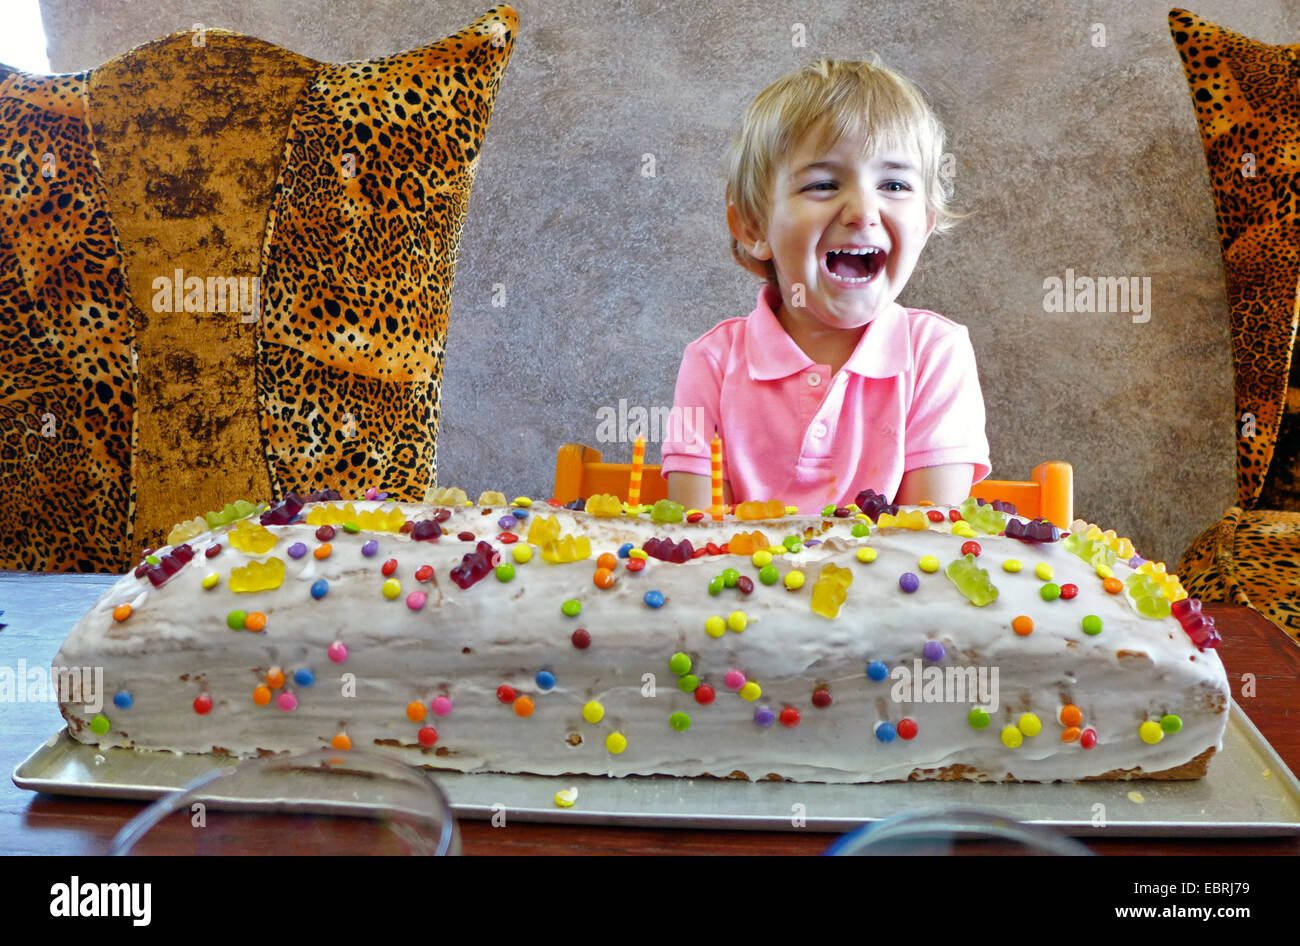 kleiner Junge mit riesigen Geburtstagstorte Stockfoto